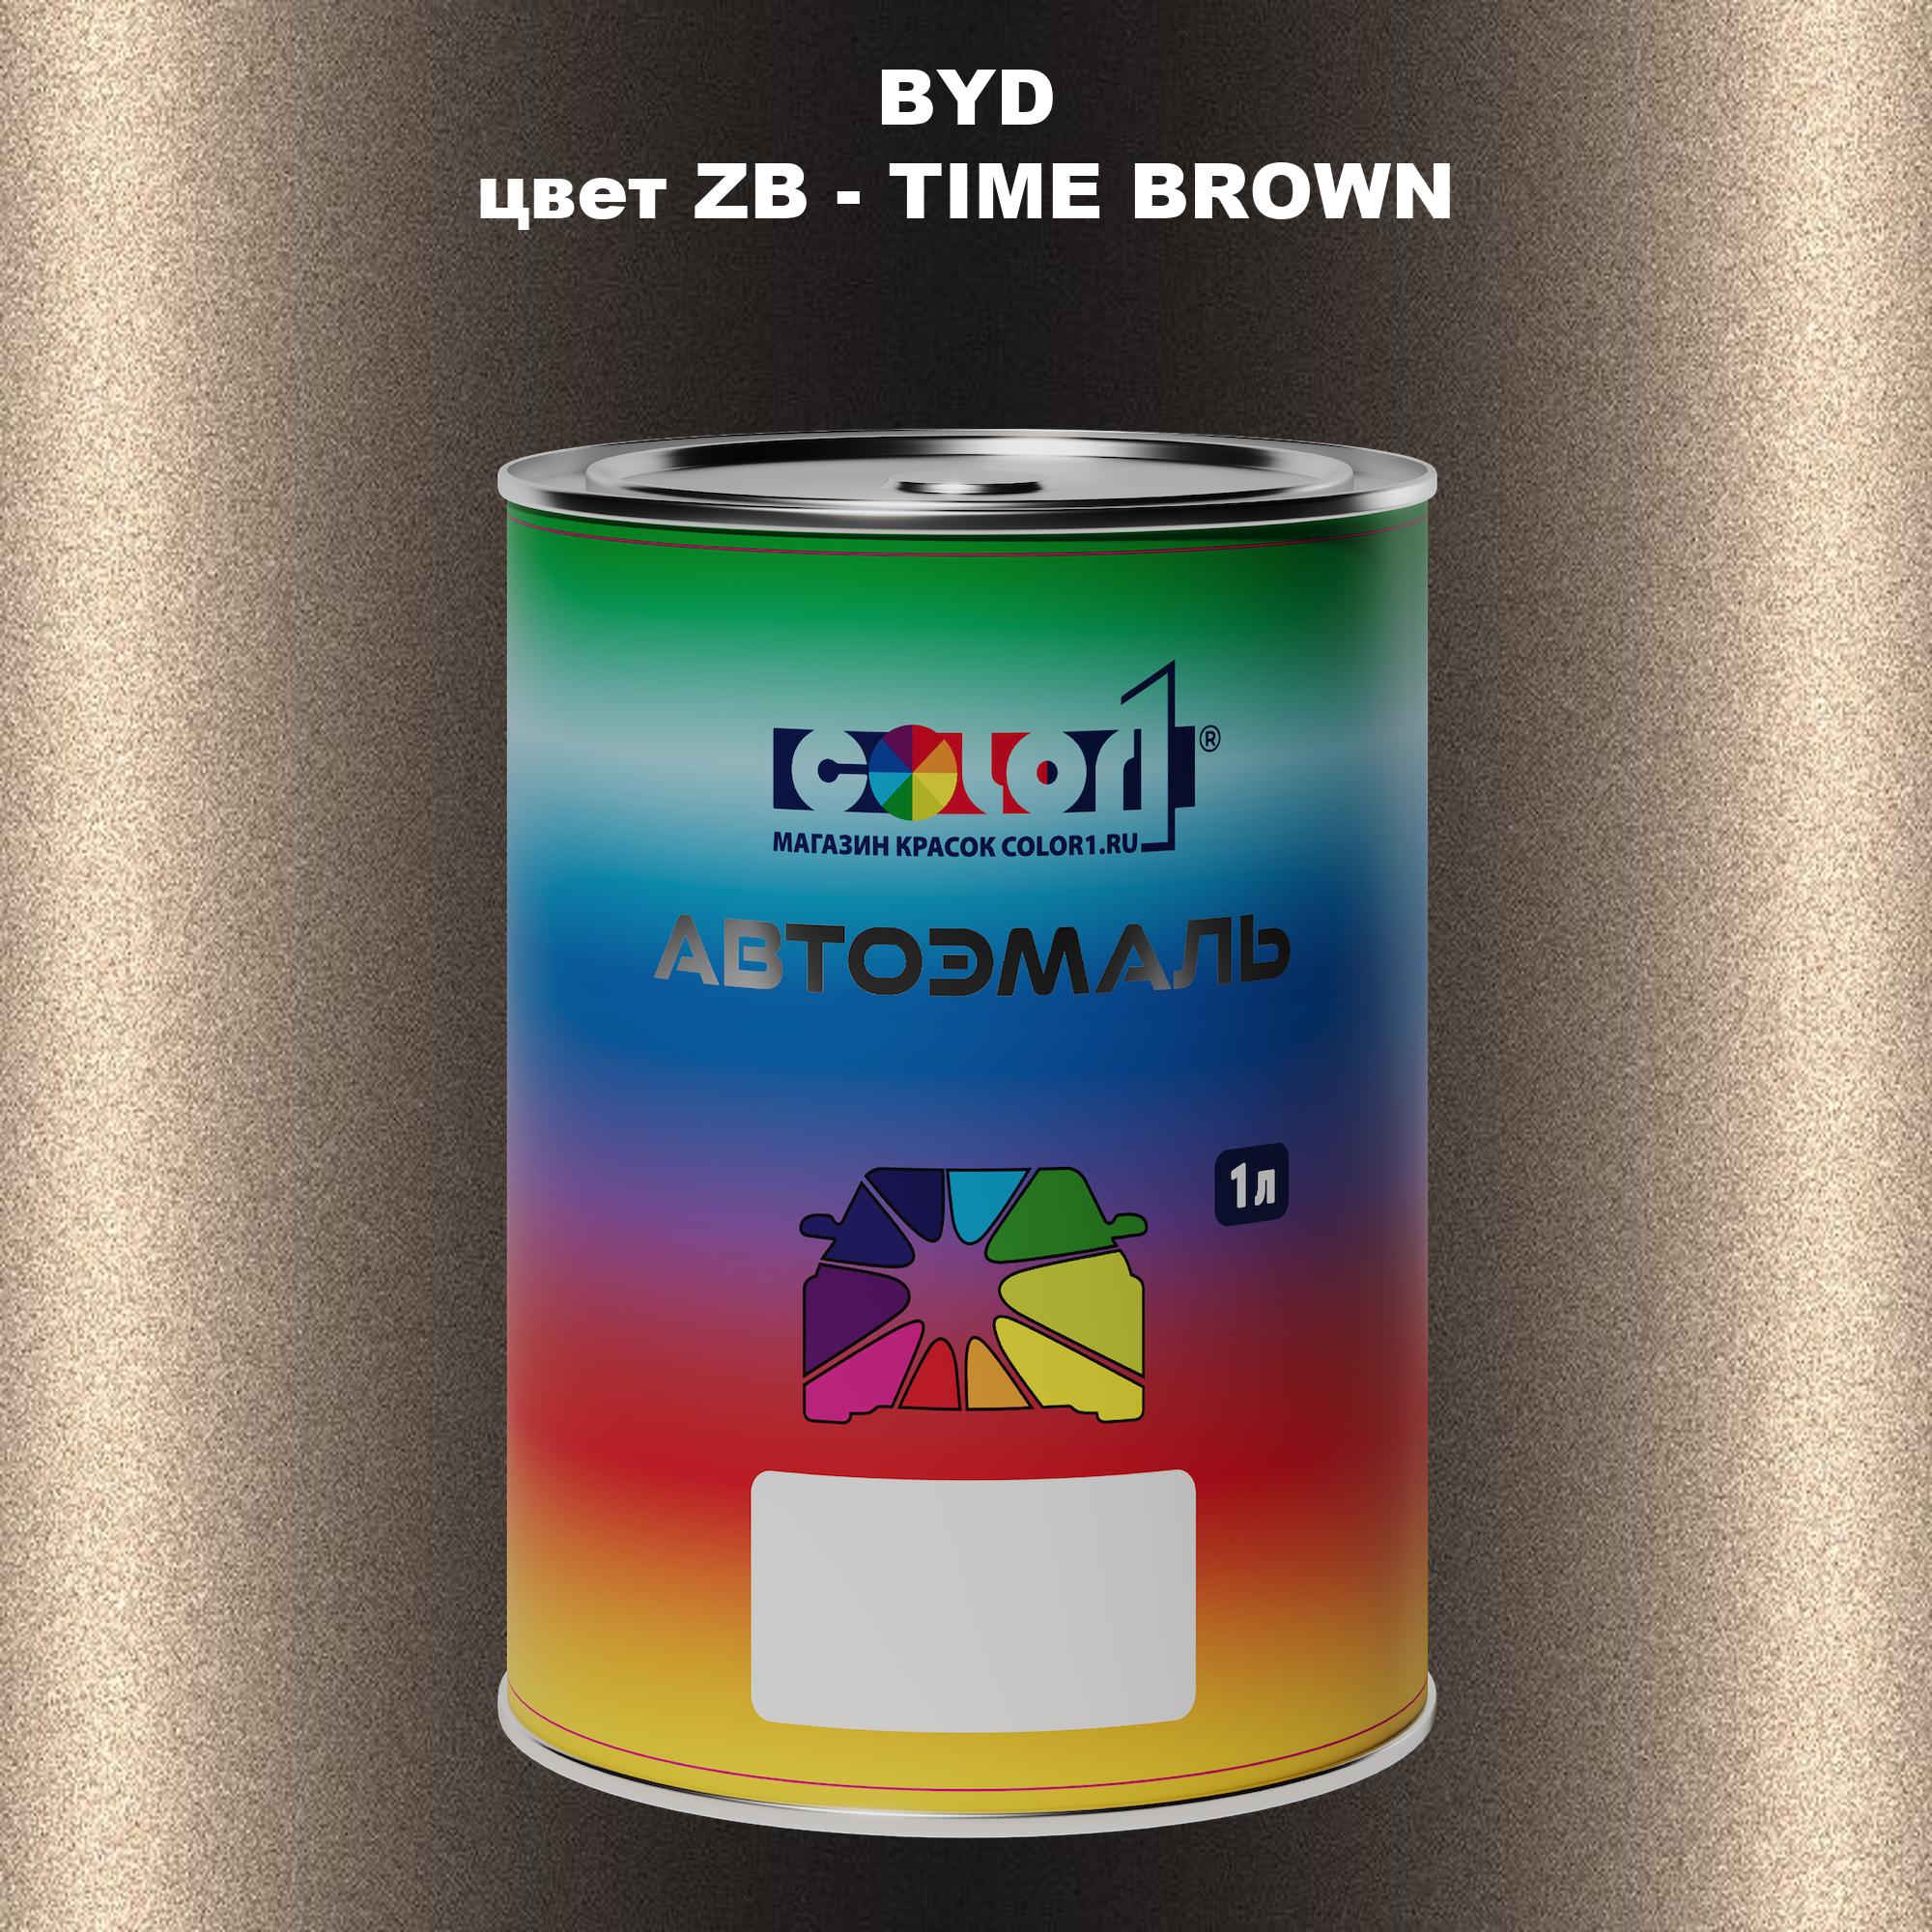 Автомобильная краска COLOR1 для BYD, цвет ZB - TIME BROWN